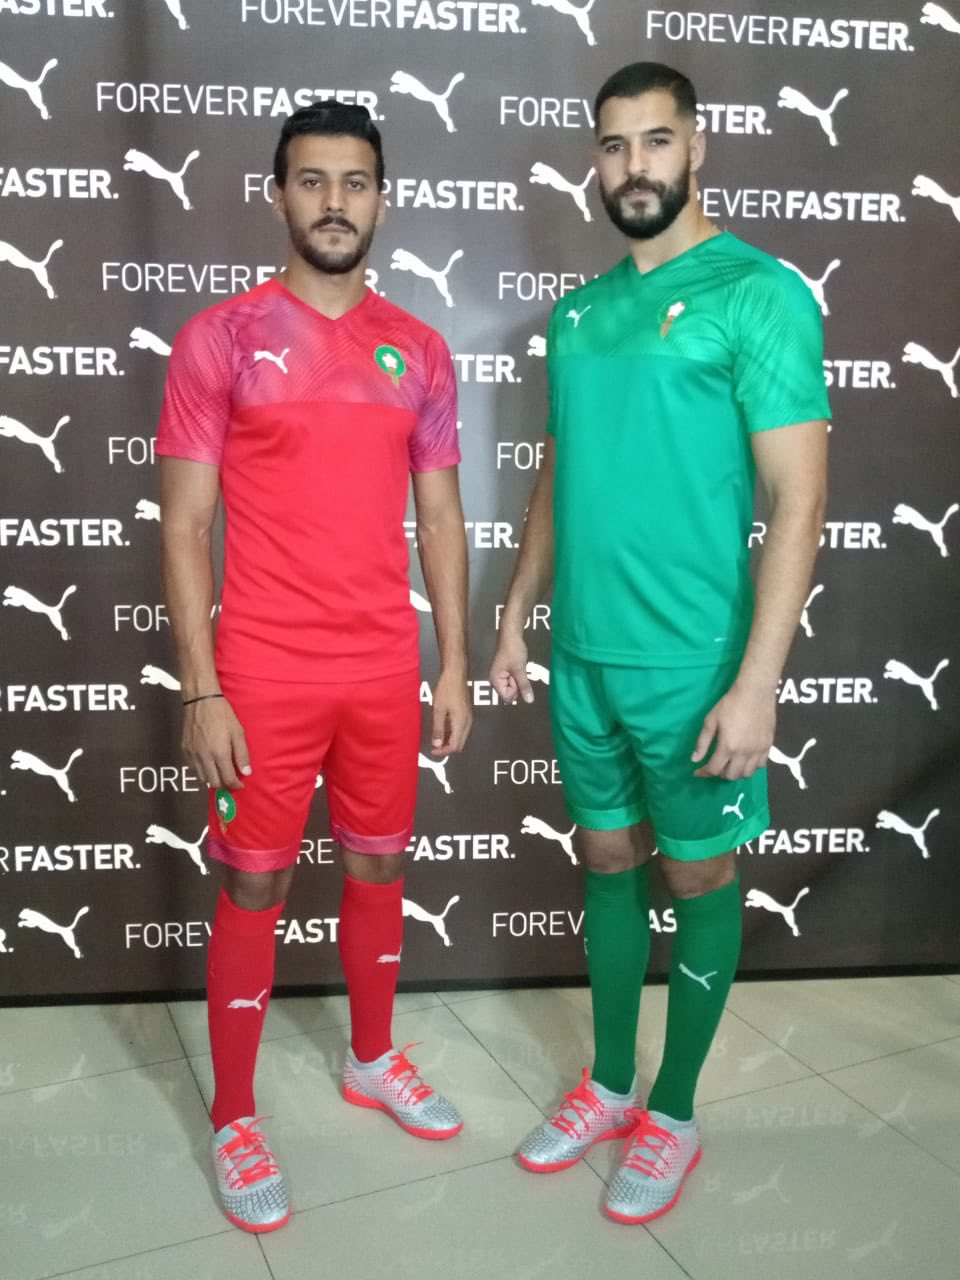 Maroc : le nouveau maillot Puma dévoilé !